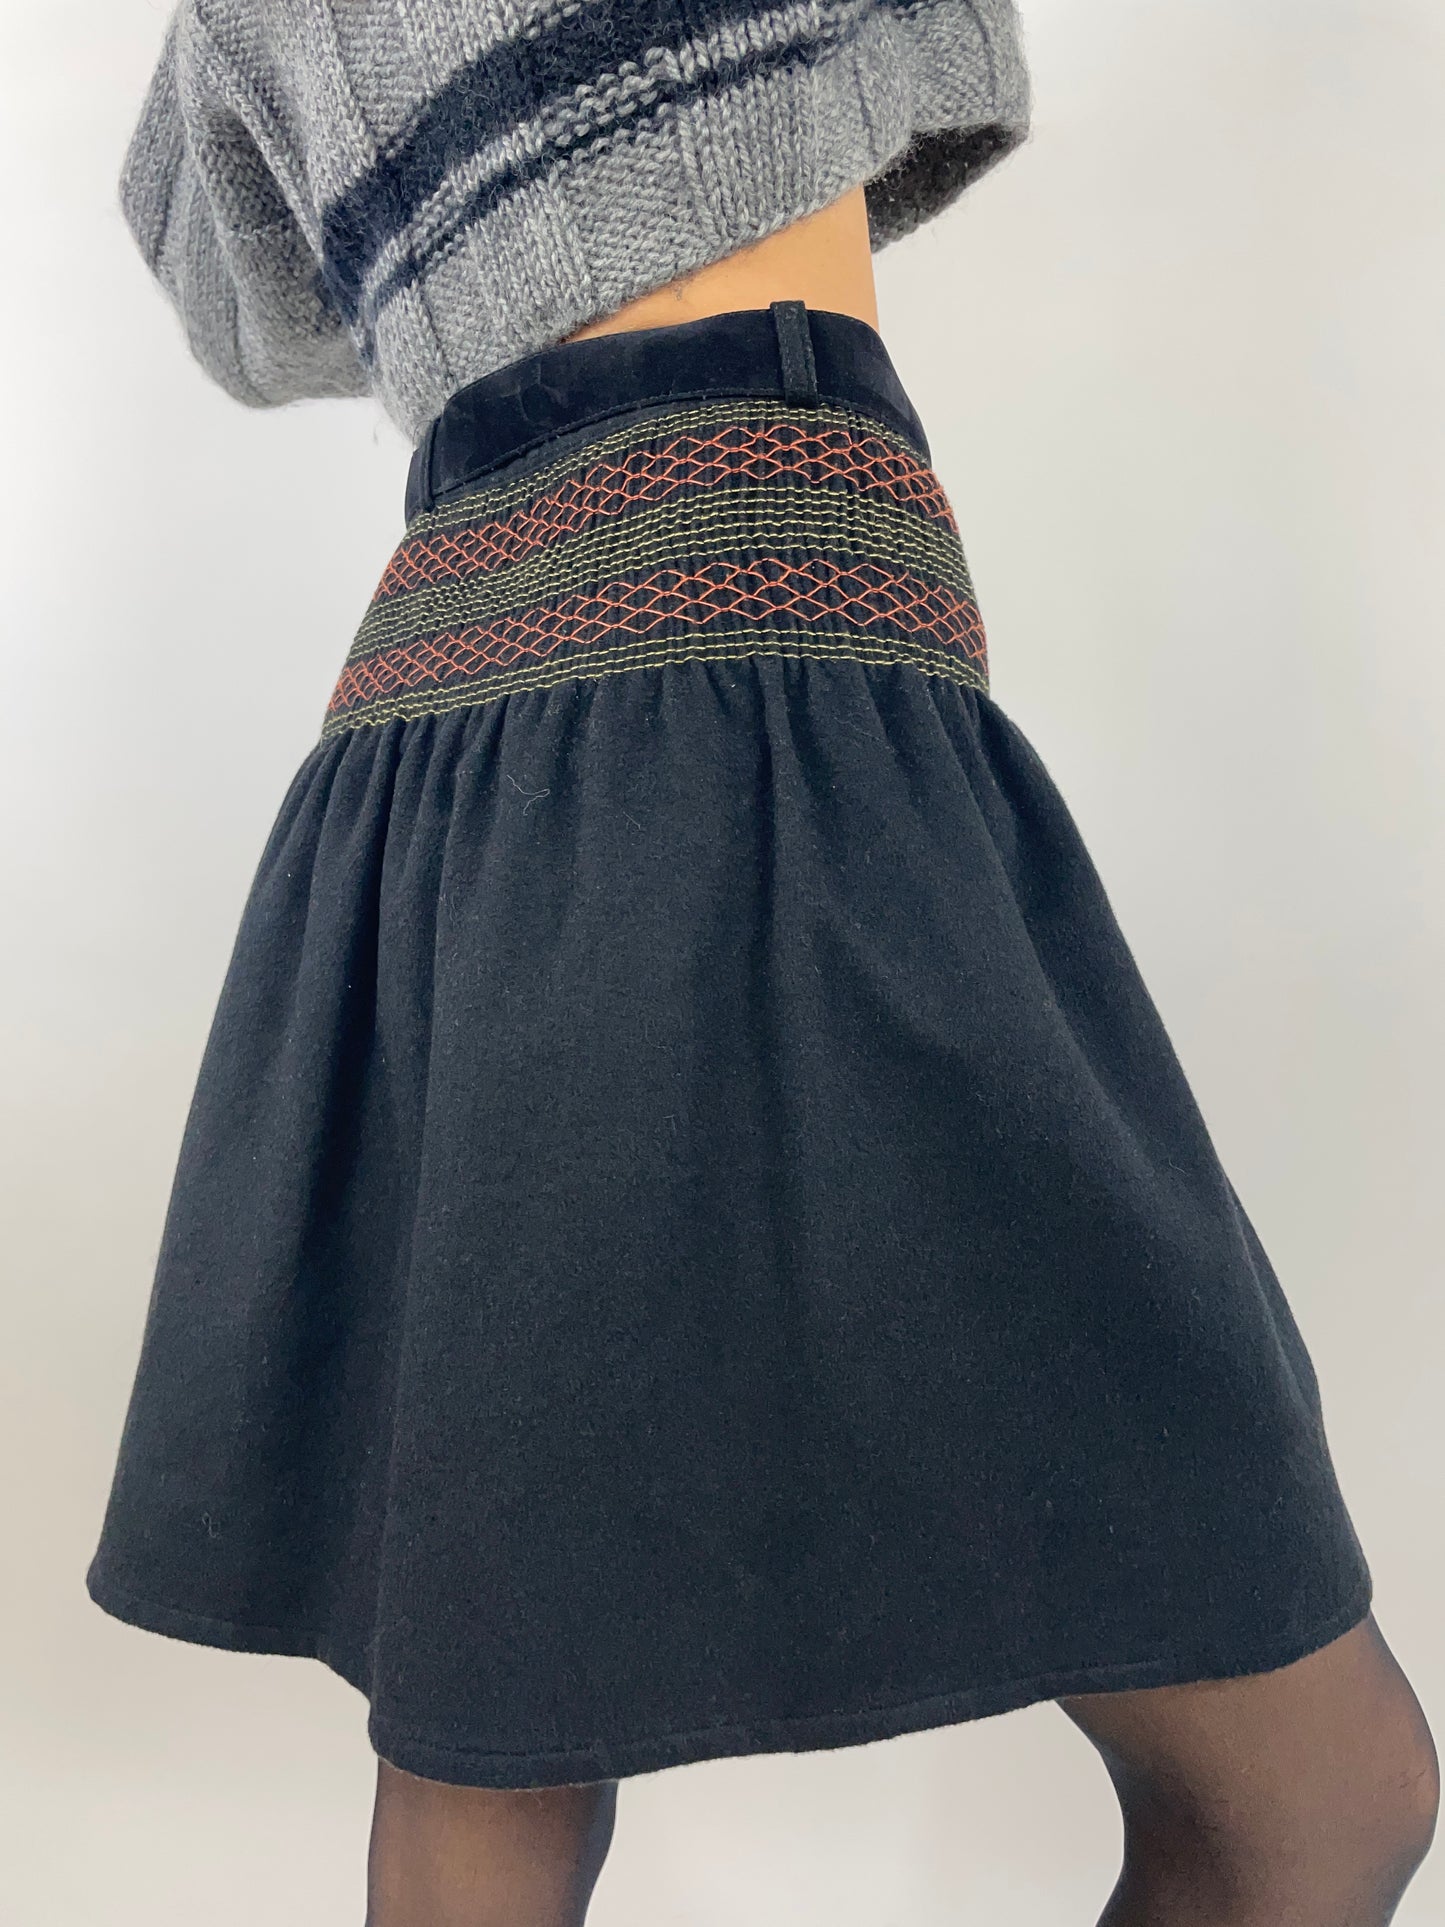 1980s skirt